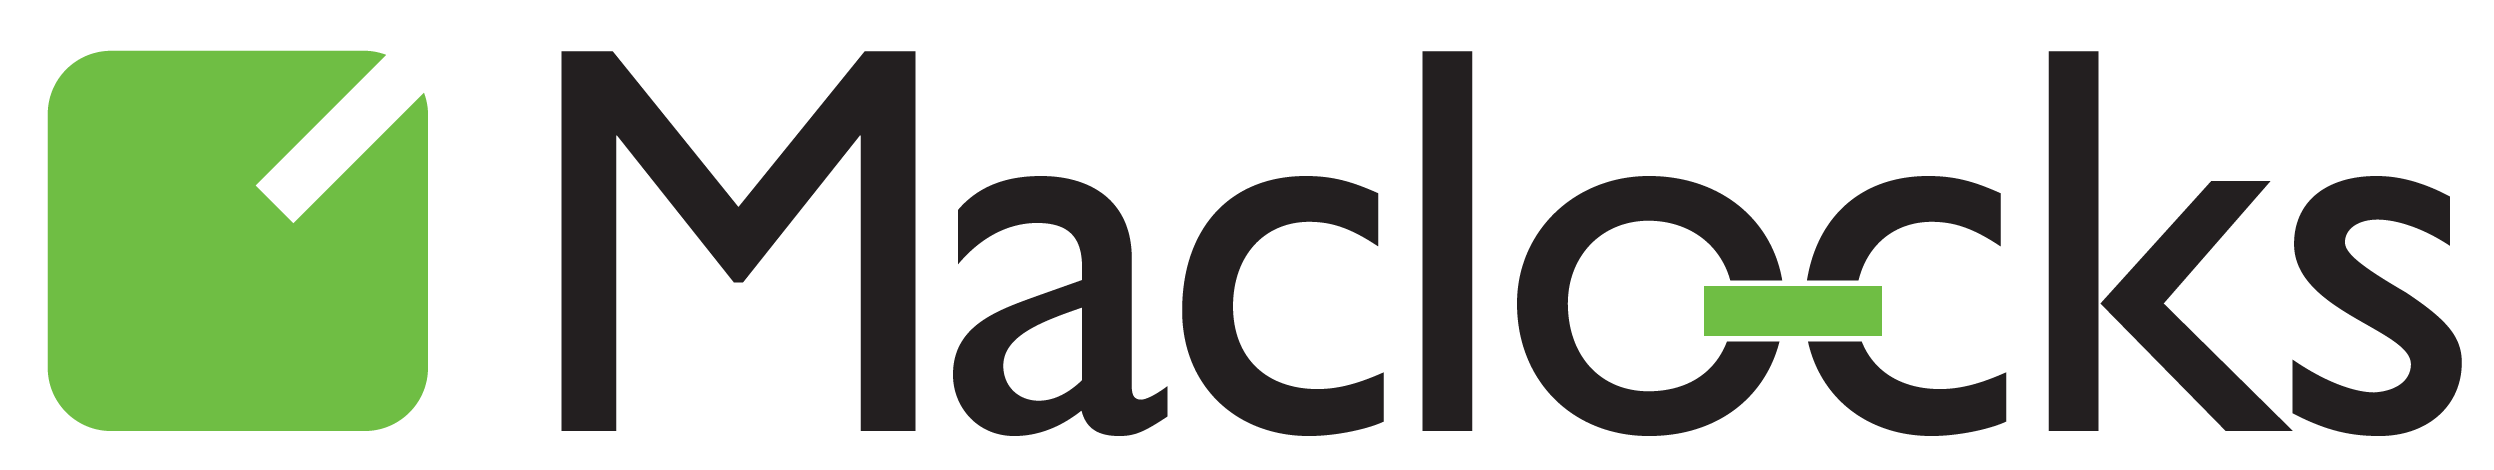 Maclocks logo